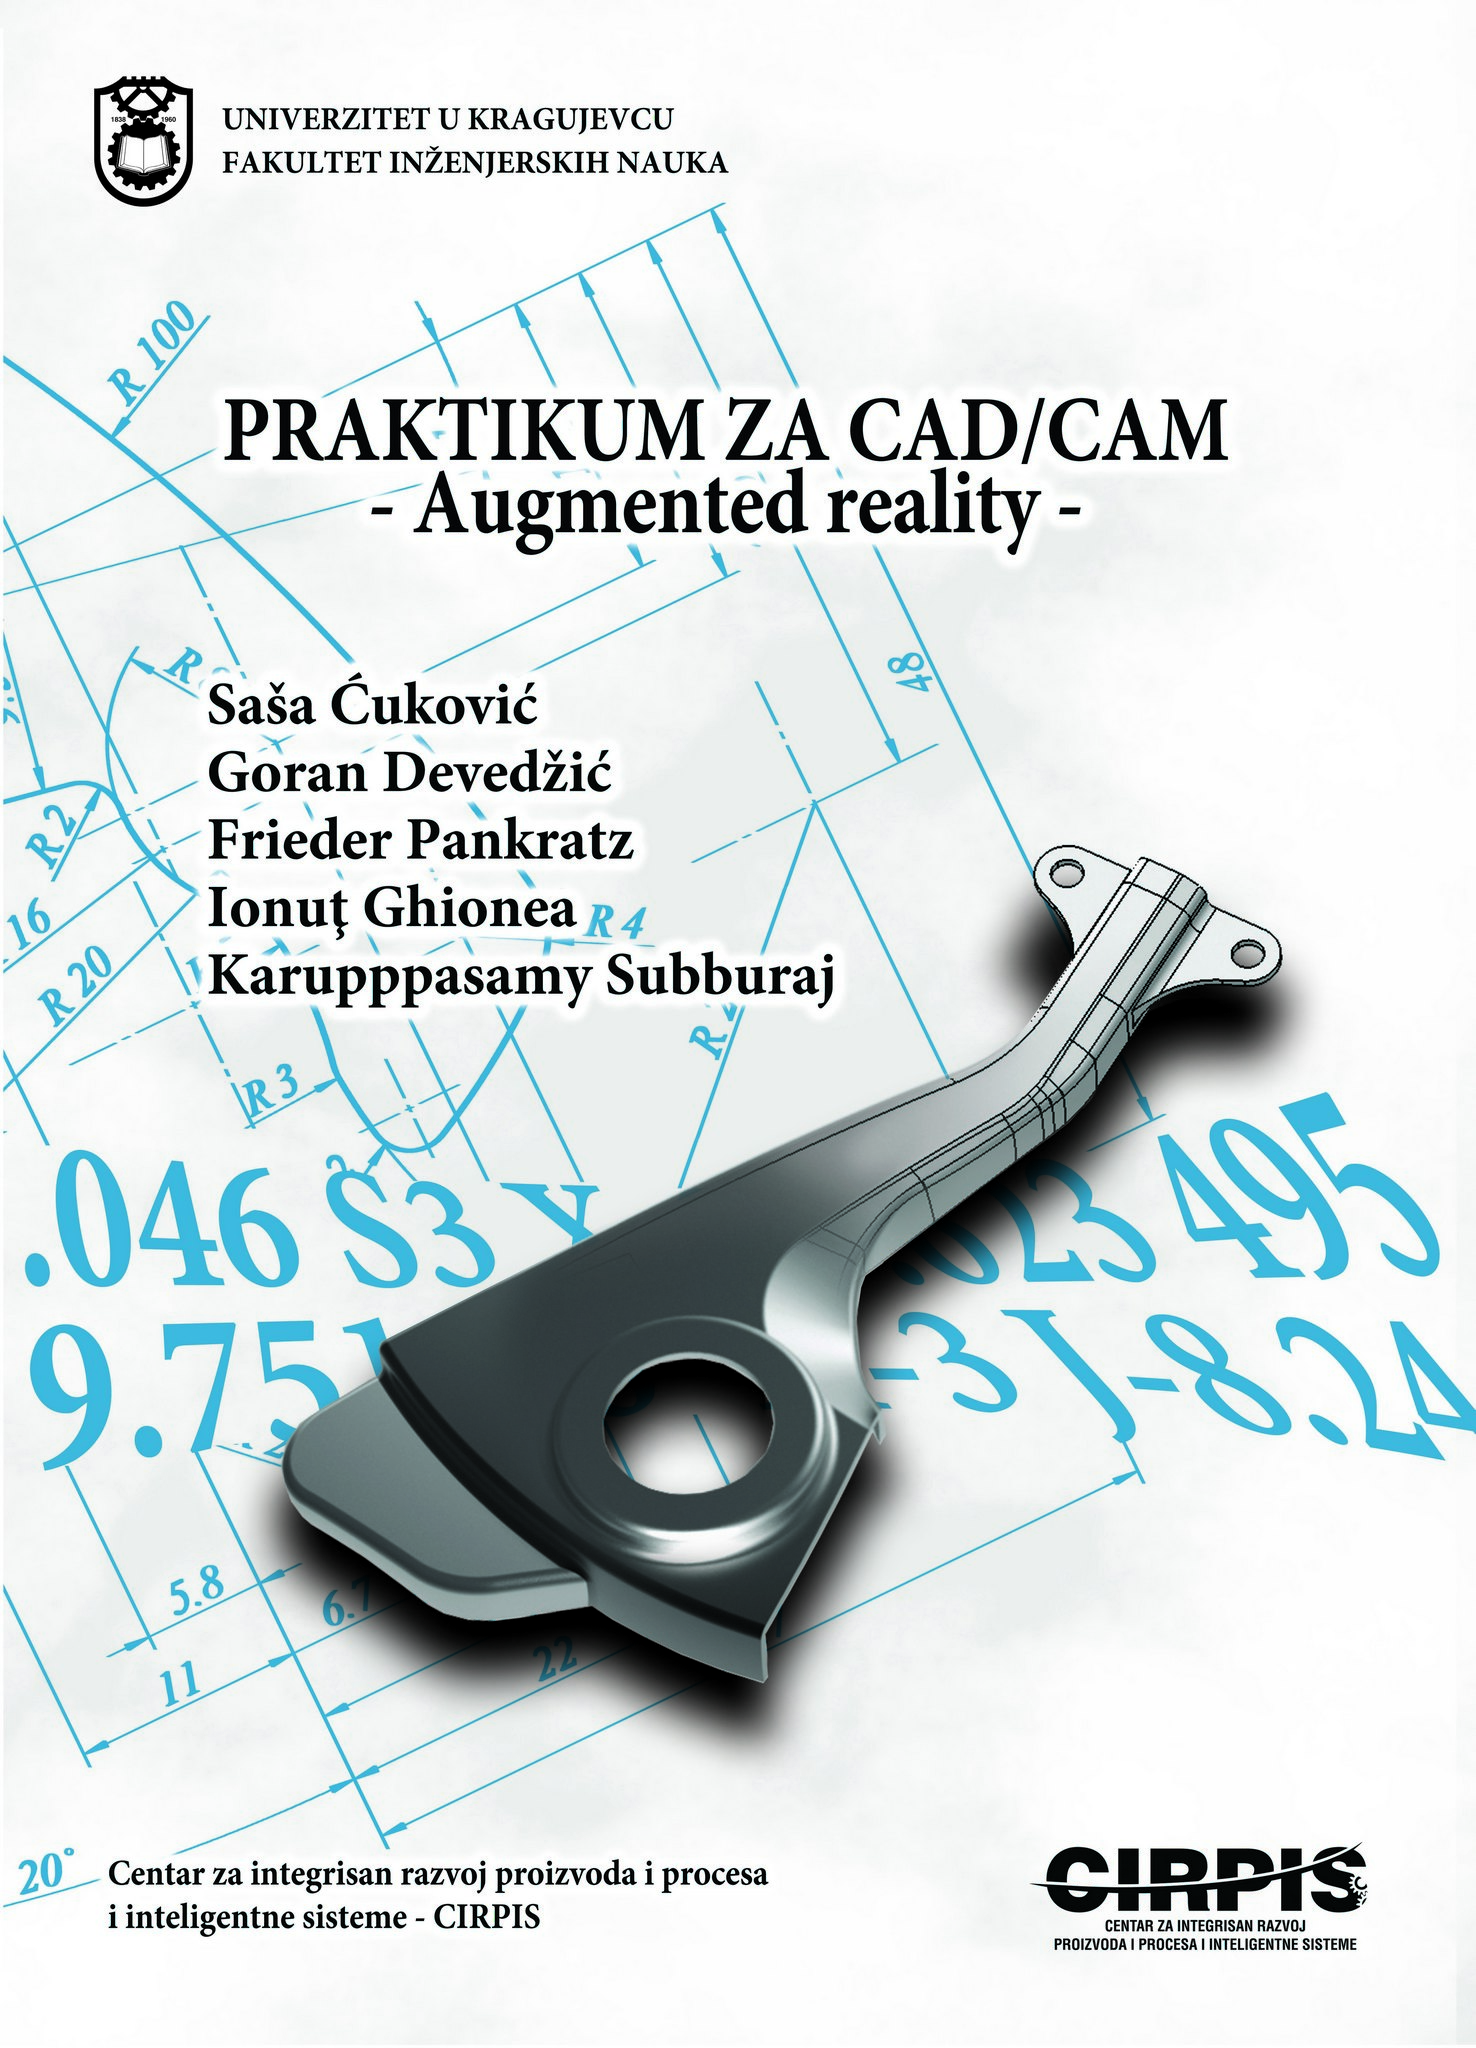 Praktikum CAD CAM